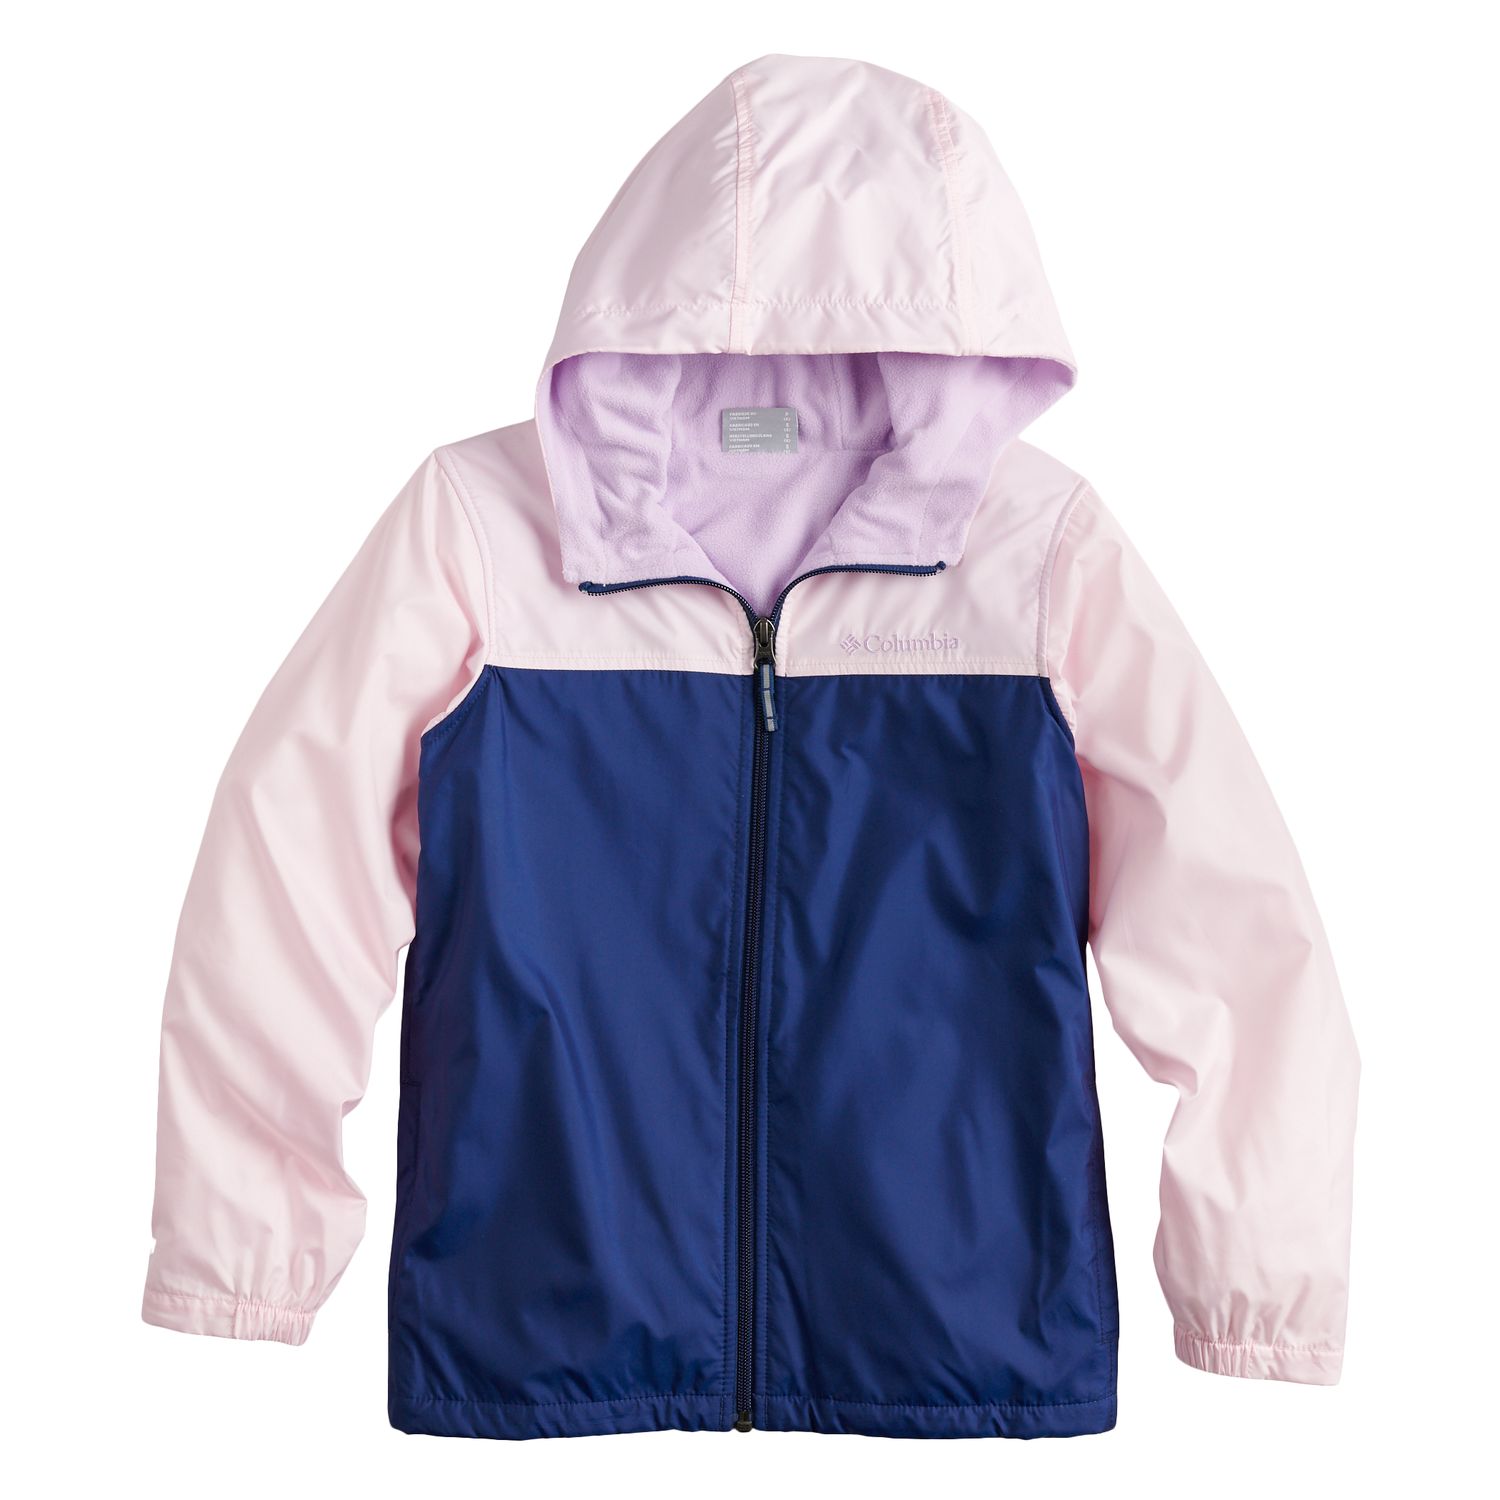 columbia fleece lined jacket